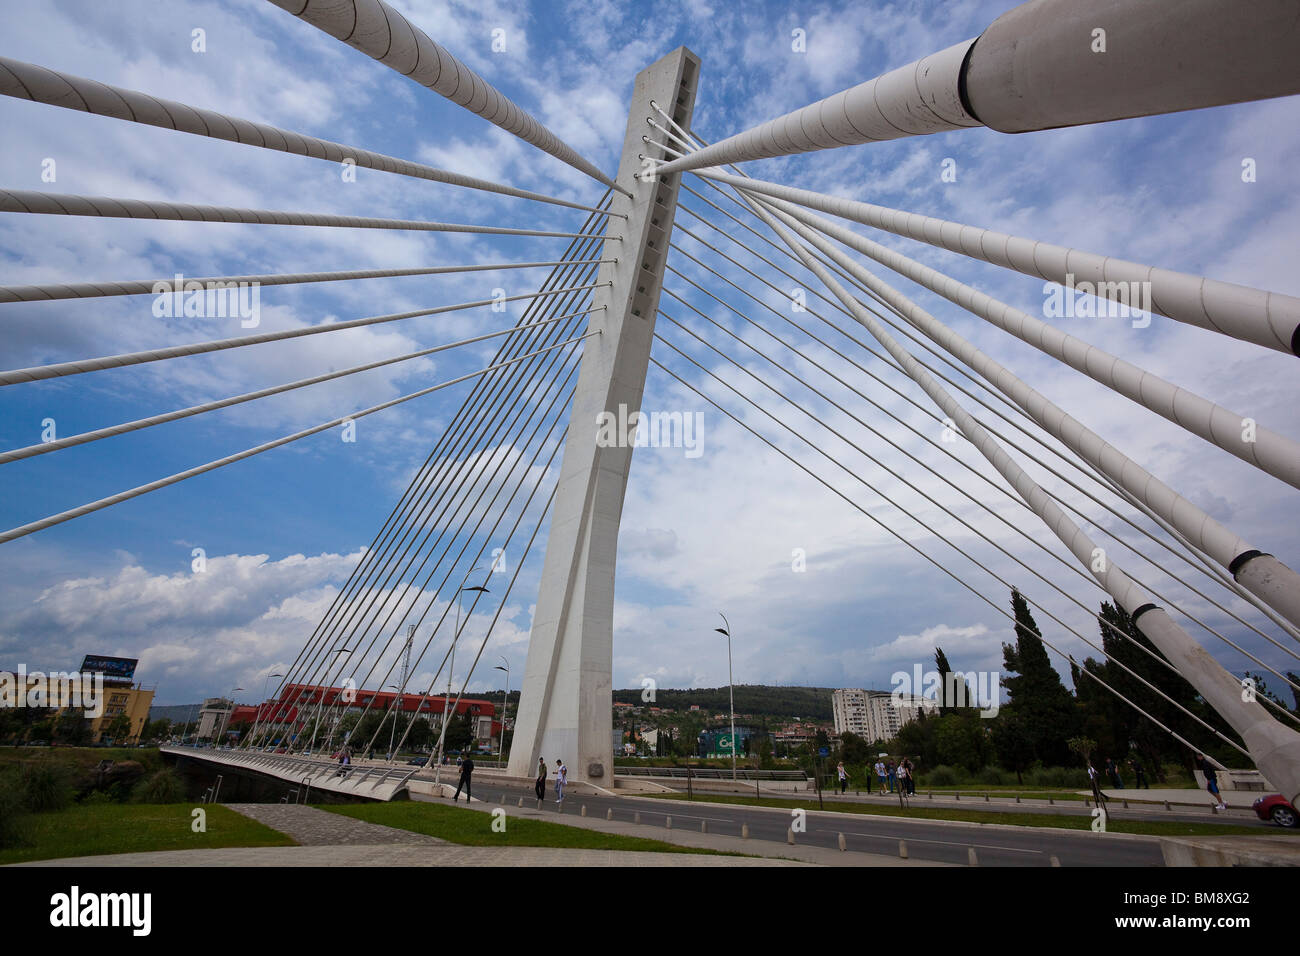 Podgorica, Capital of Montenegro Stock Photo